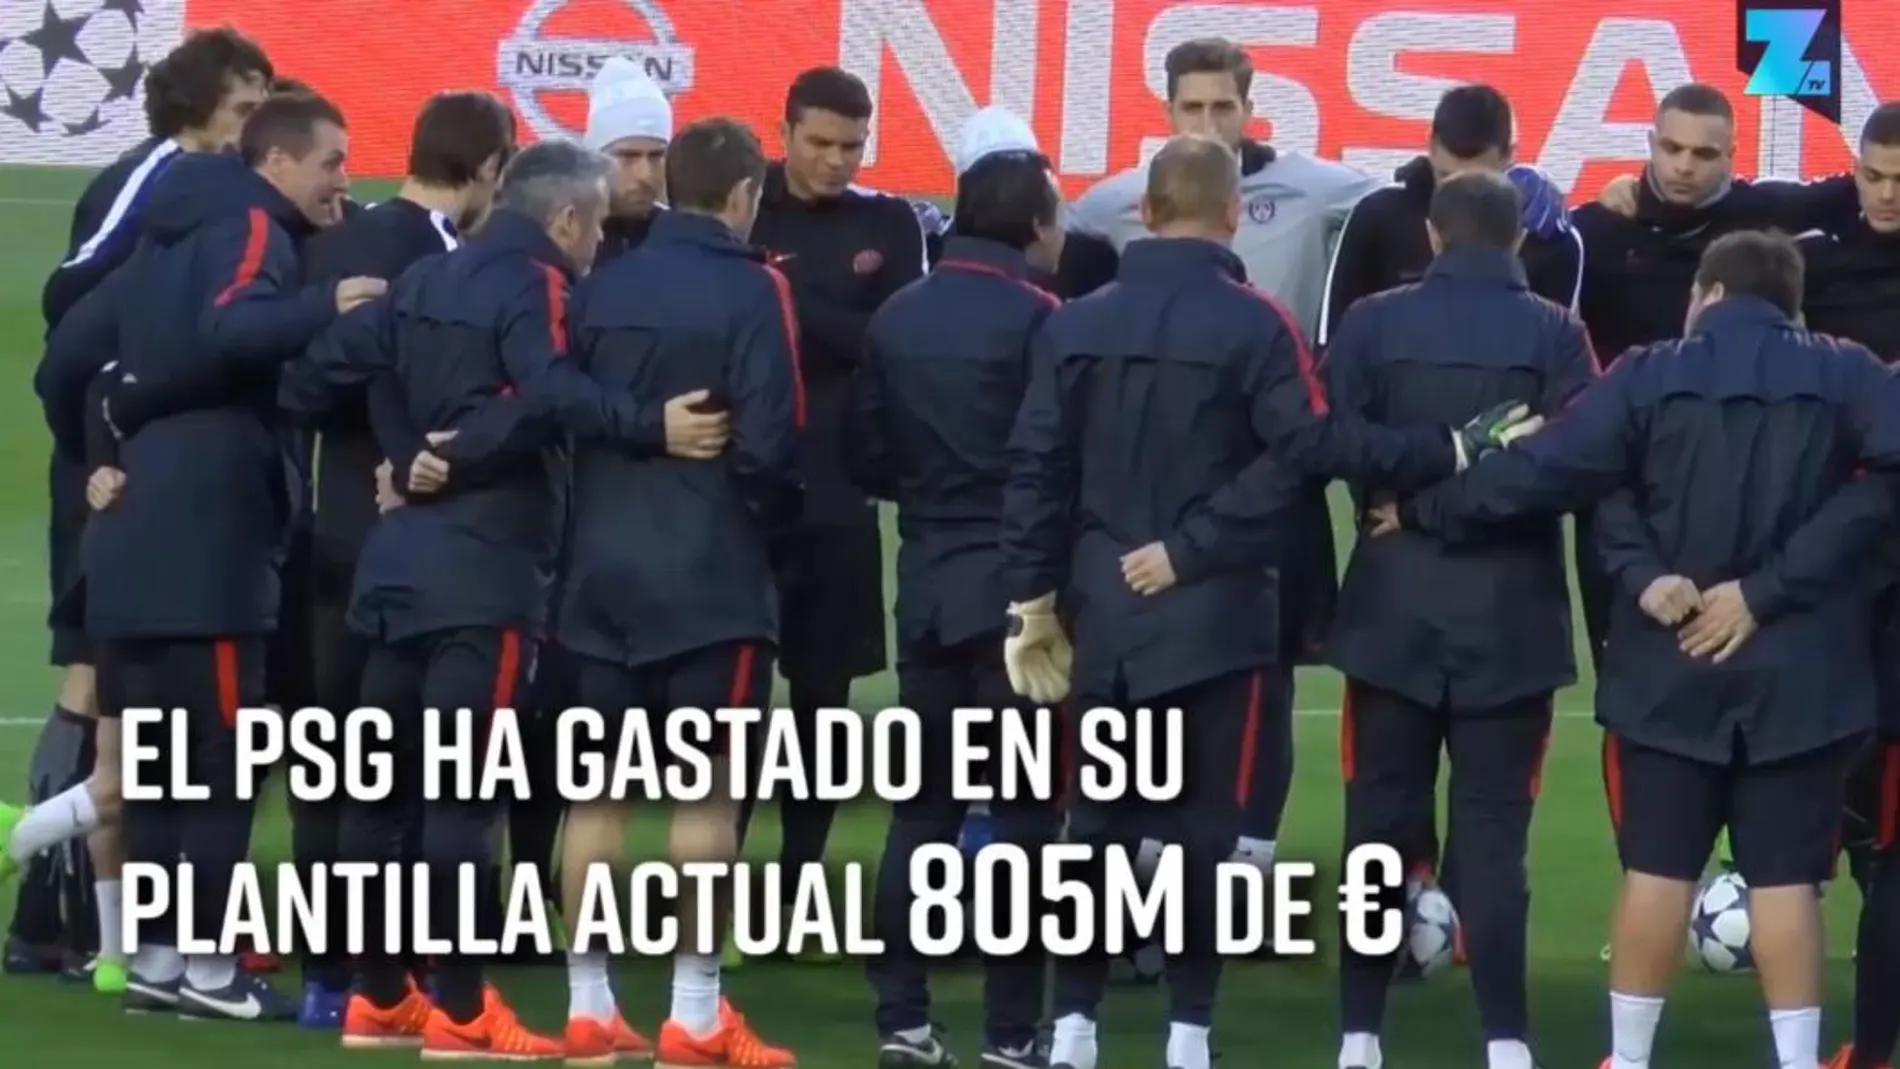 Madrid vs PSG: ¿Quién ha gastado más en su plantilla?